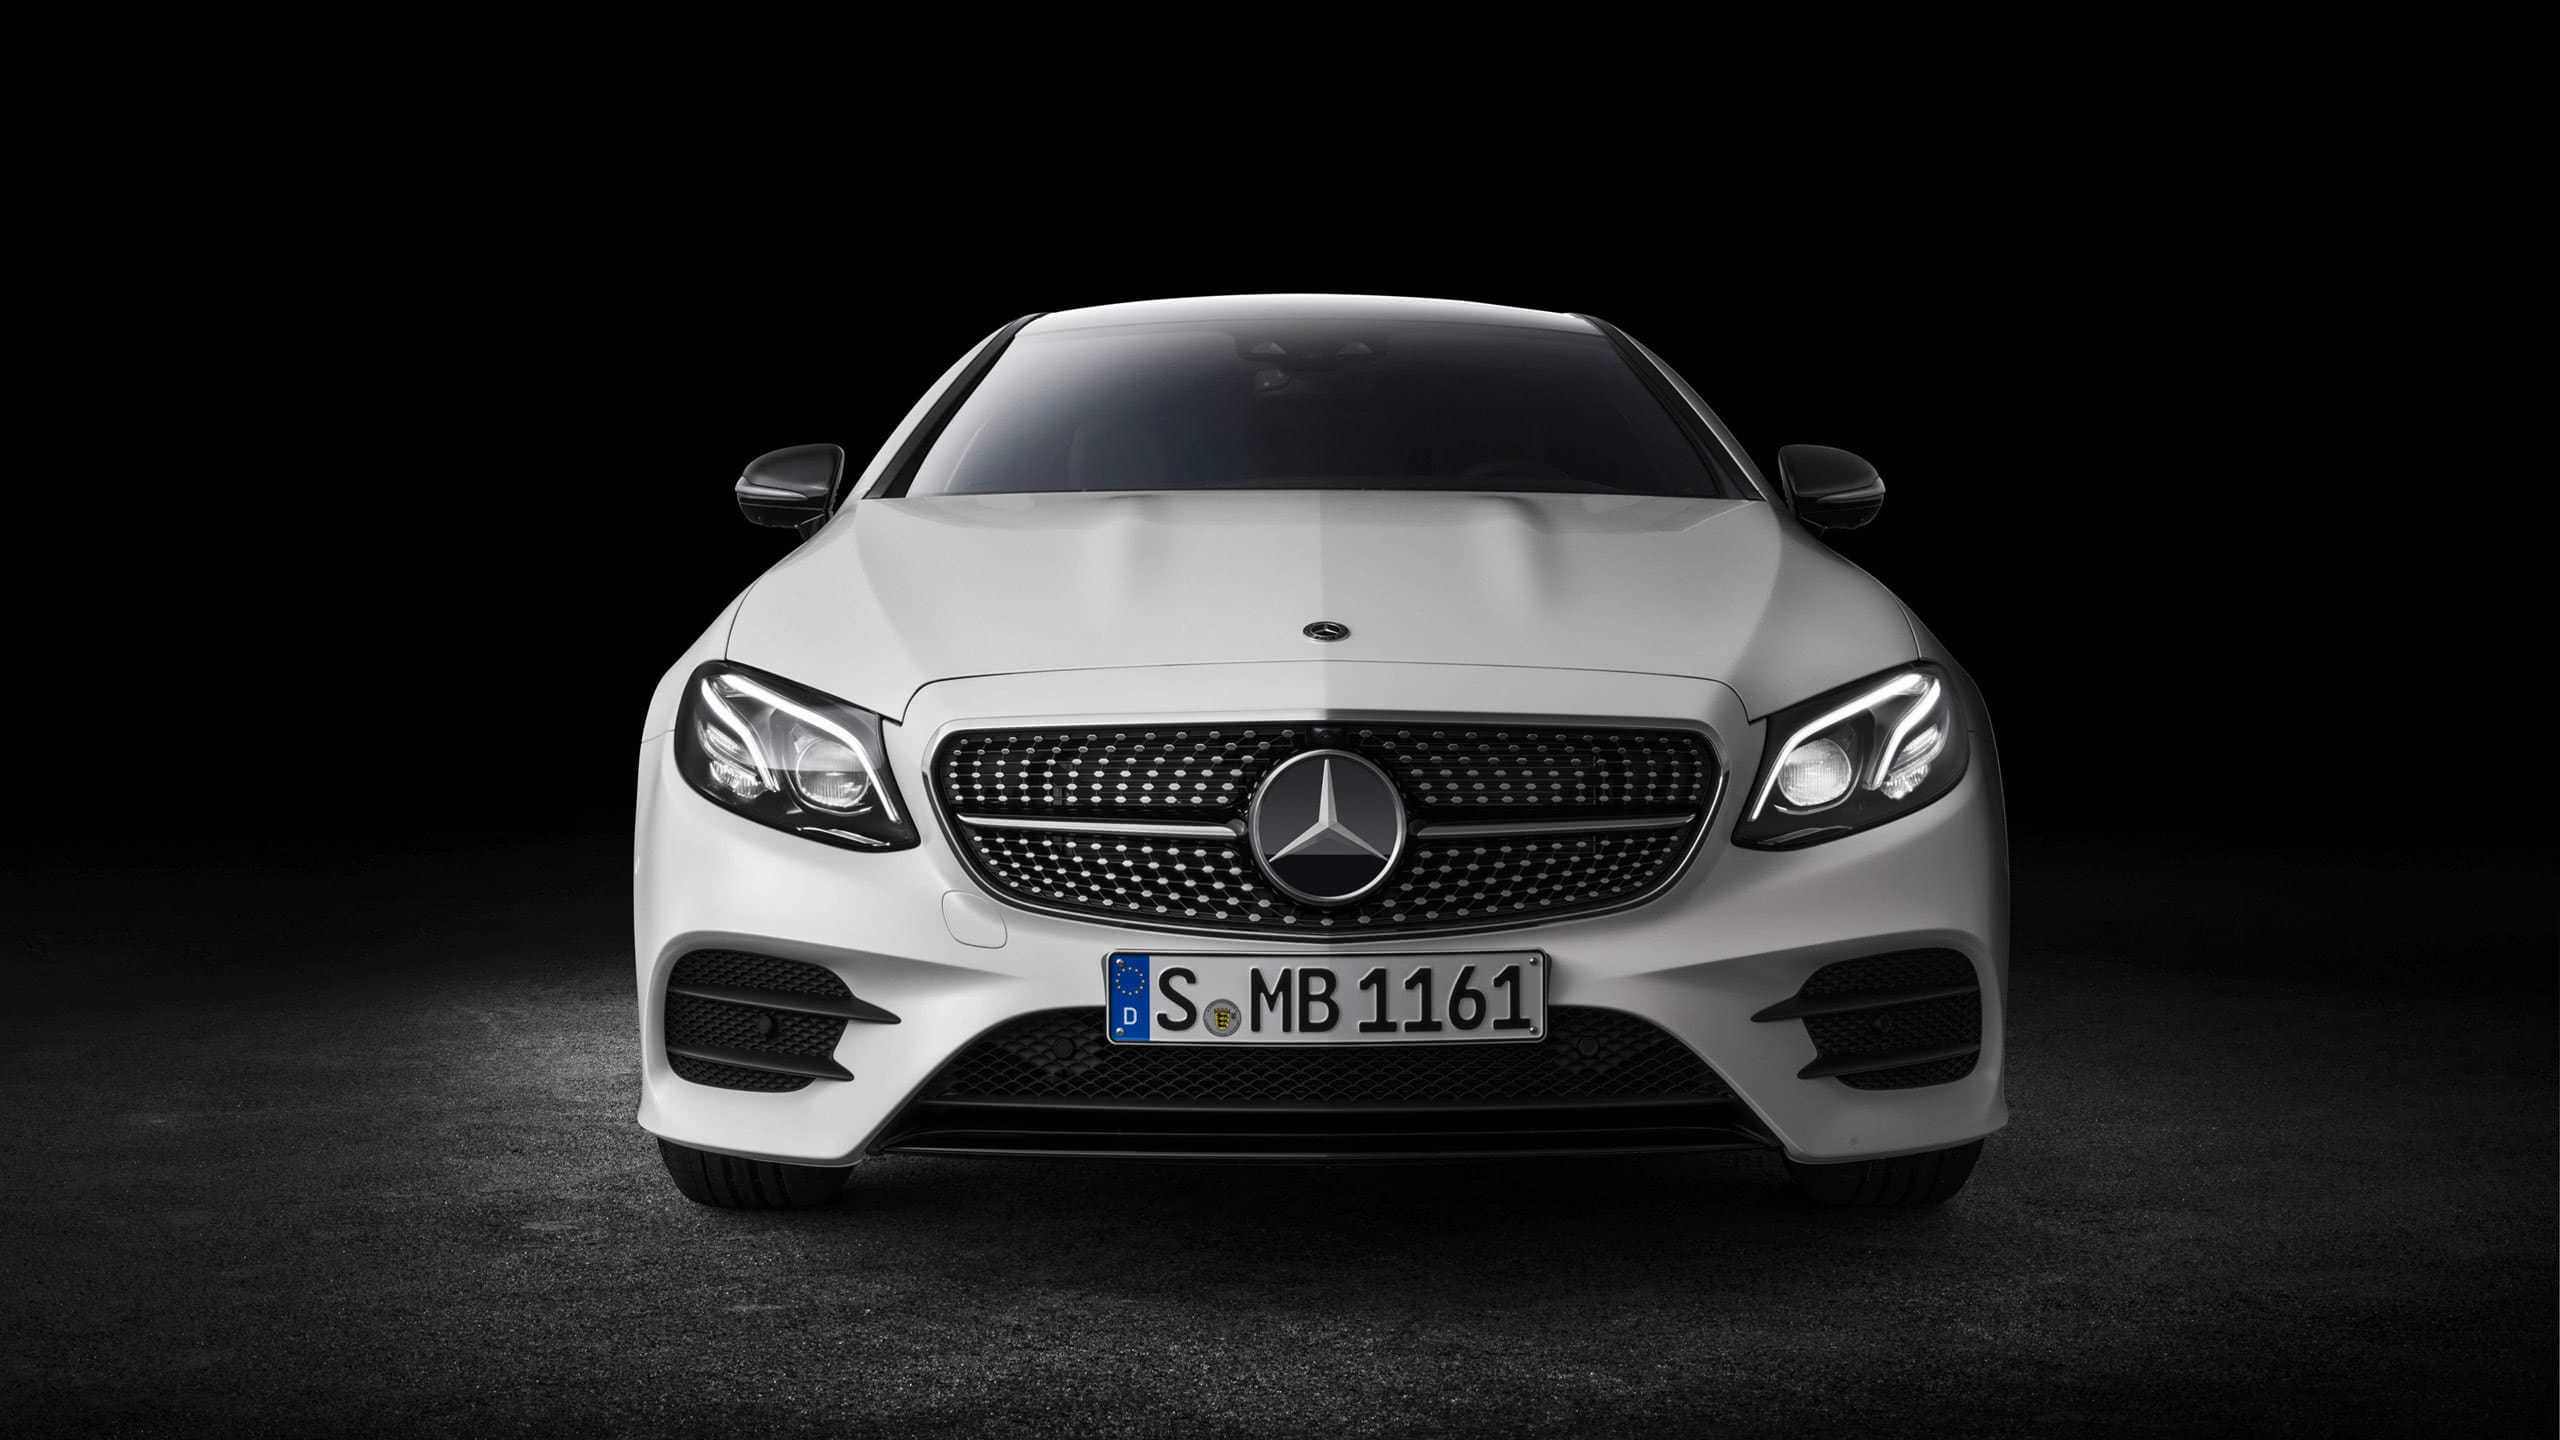 Mercedes-Benz E-Class, Coupe front view, WQHD wallpaper, Stunning visuals, 2560x1440 HD Desktop